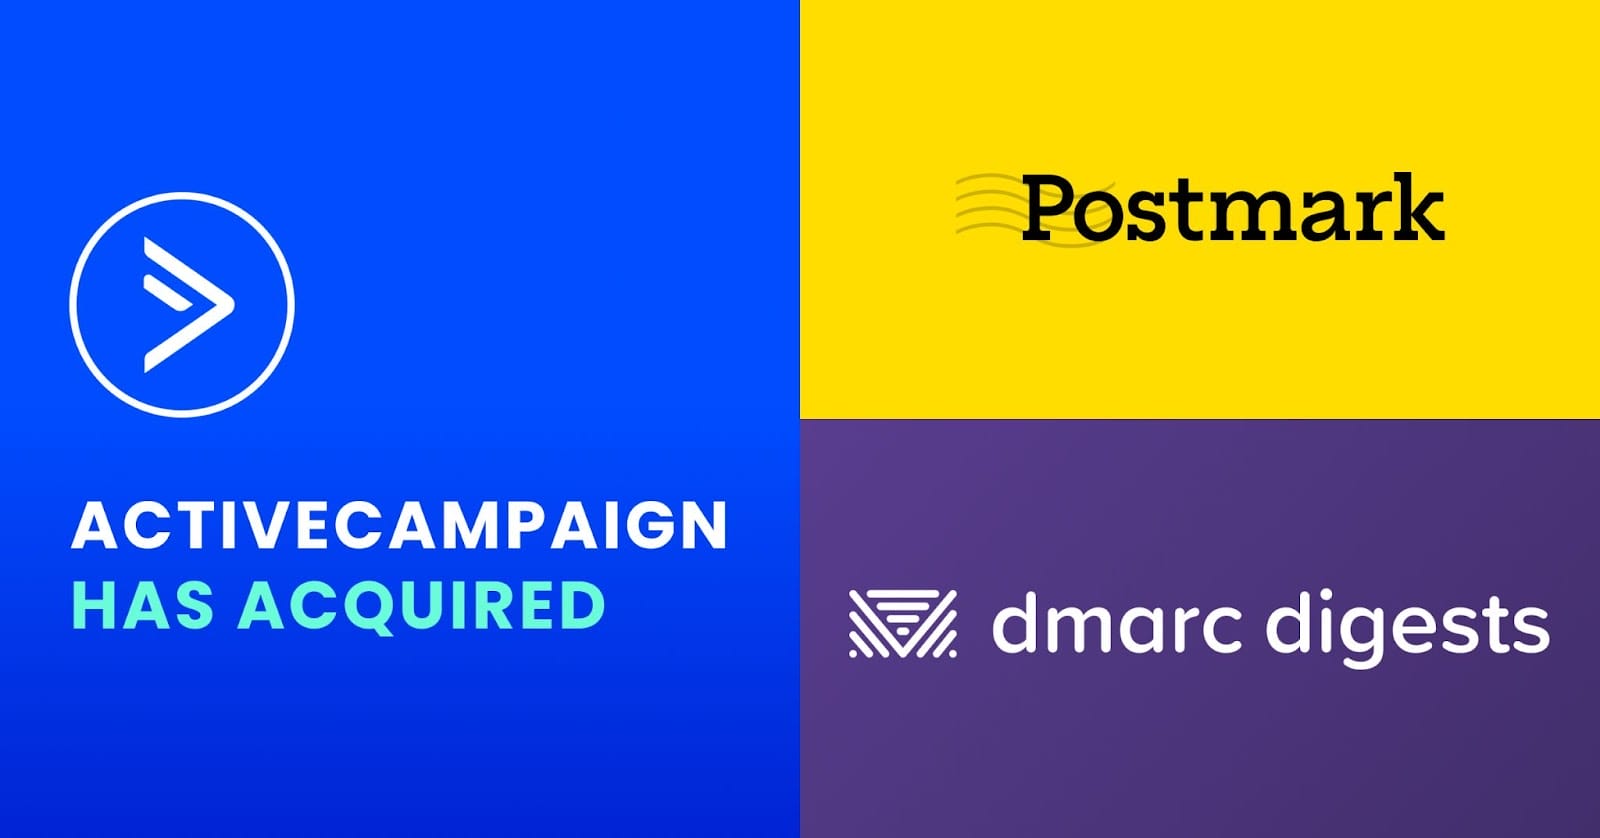 ActiveCampaign achiziționează Postmark și dmarc digests